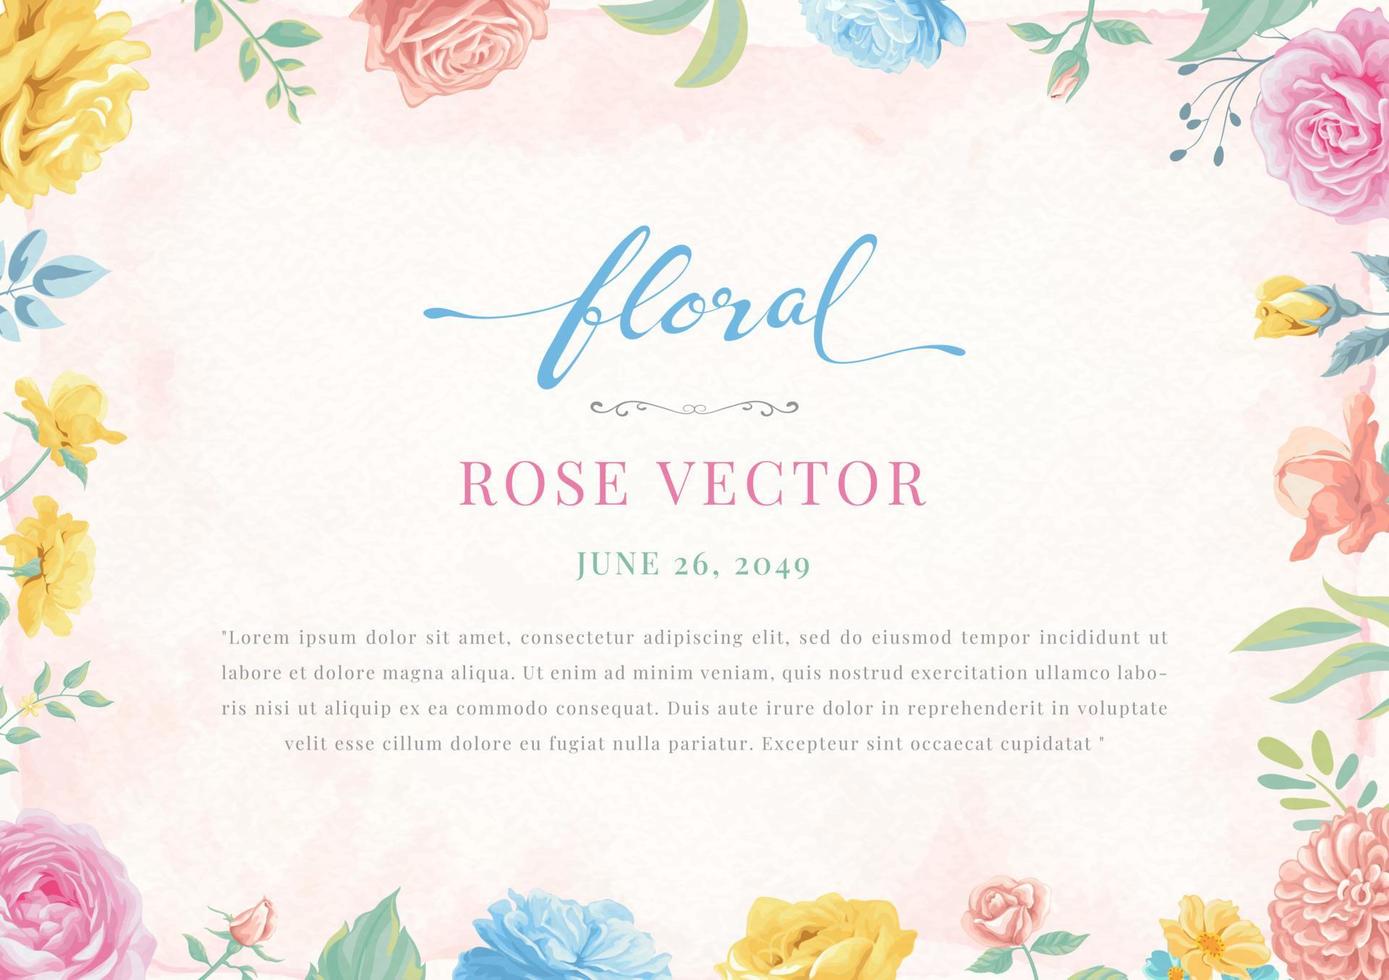 Rose Flower and botanical leaf digital painted illustration vector